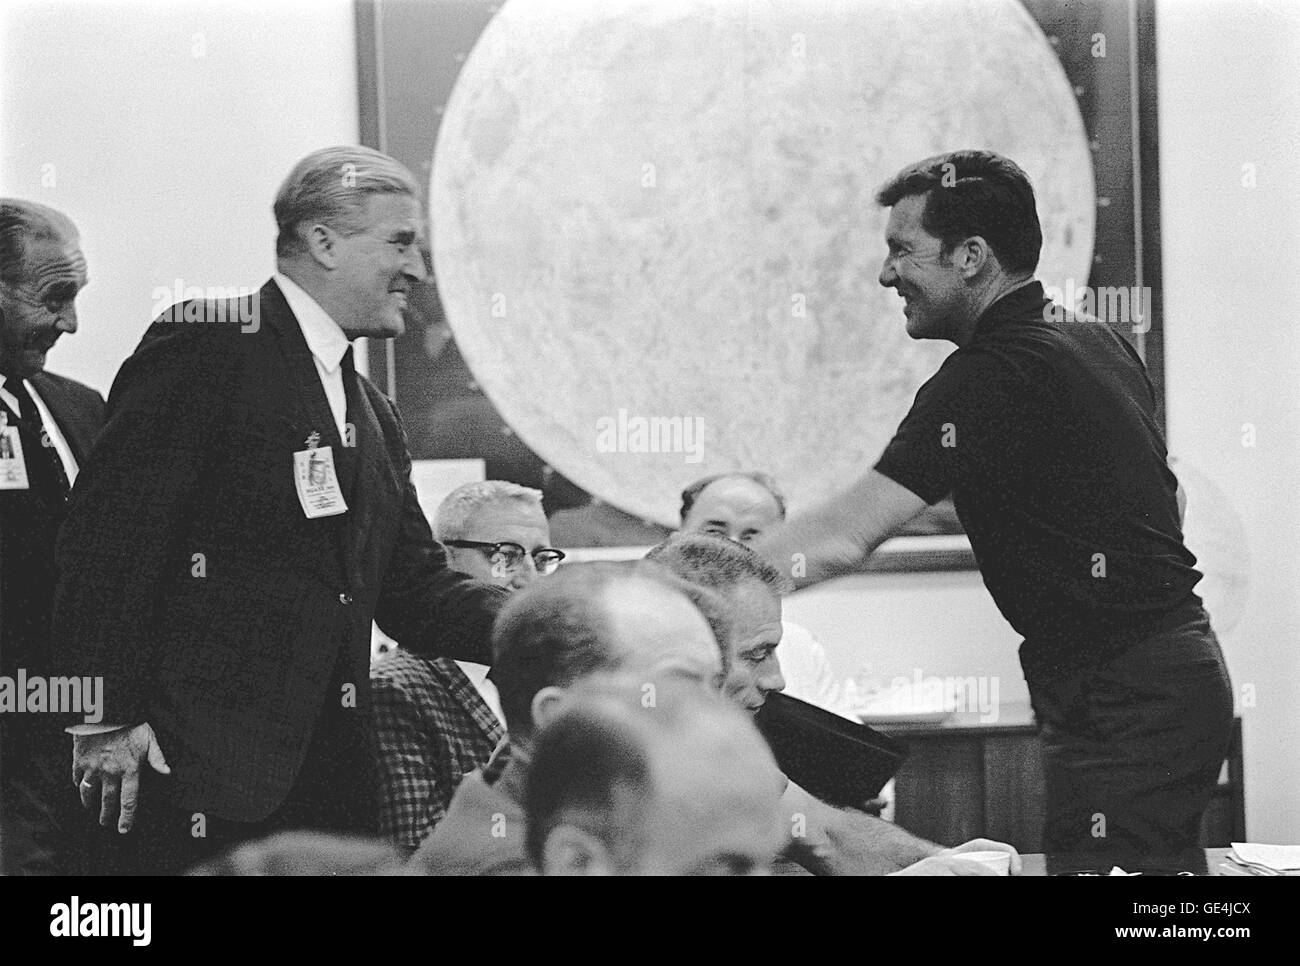 (10 ottobre 1968) Apollo 7 il Comandante Walter M. Schirra, Jr., sinistra, saluta il dottor Wernher von Braun, Direttore, Marshall Space Flight Center e il dottor Kurt Debus, Destra, KSC direttore, durante una missione prelaunch briefing tenuto presso la Florida Spaceport. Immagine # : 68P-0405 Foto Stock